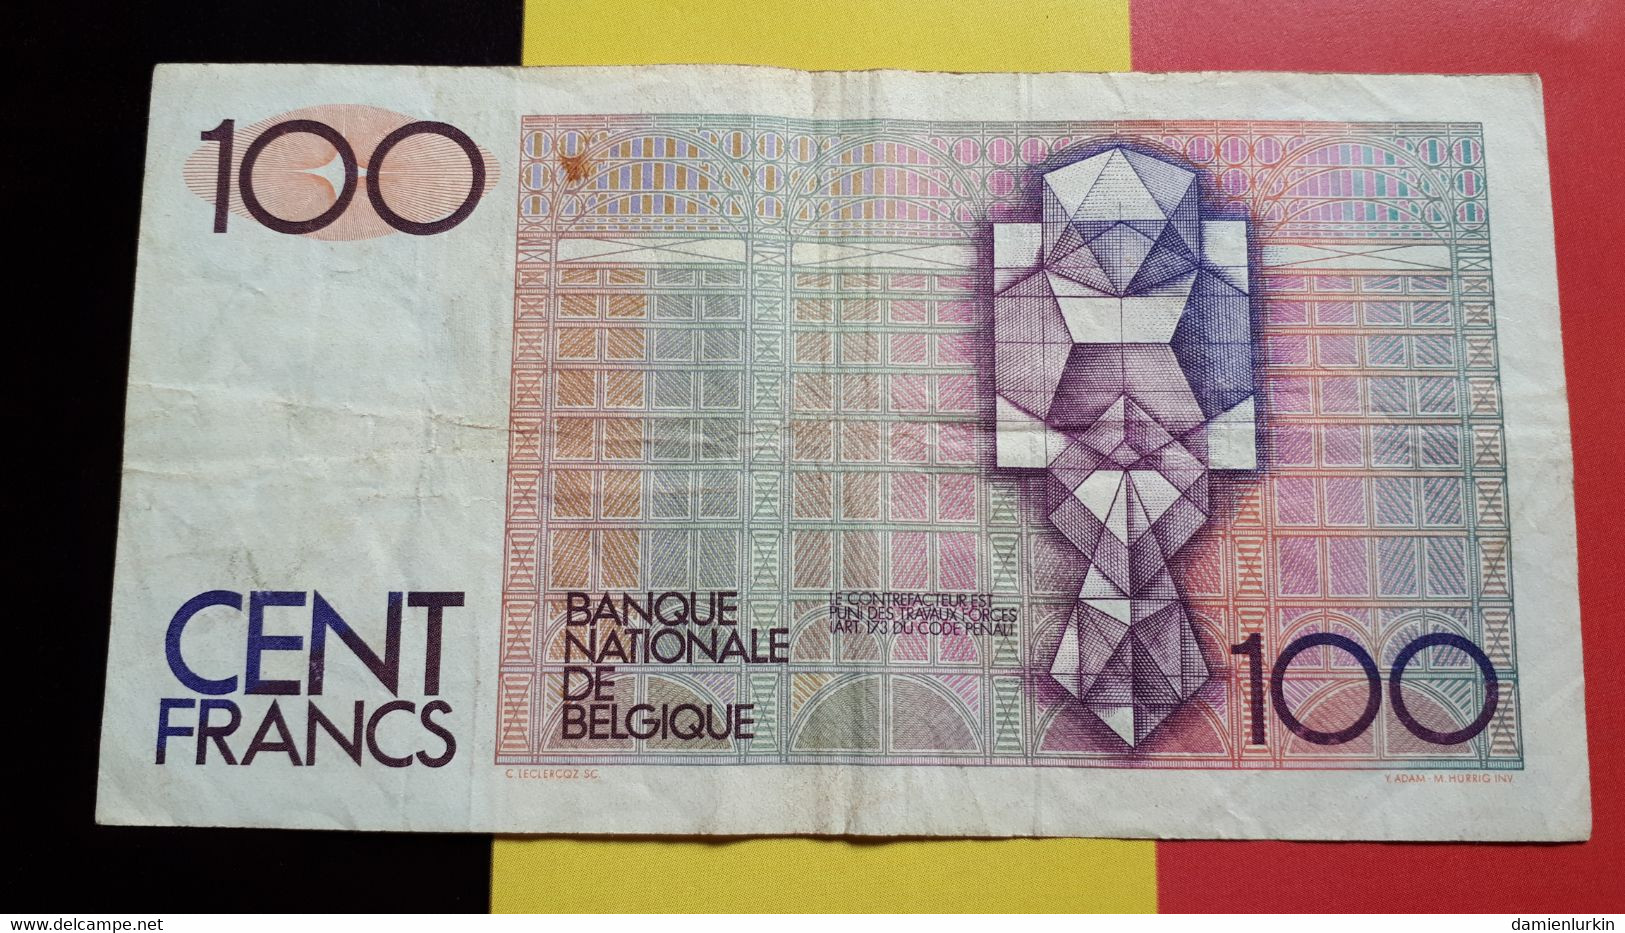 BELGIQUE 100 FRANCS TYPE BEYAERT 1978 DE STRYCKER-SIMONIS SERIE 1 SANS SIGNATURE AU VERSO P-140a.1 - 100 Francs